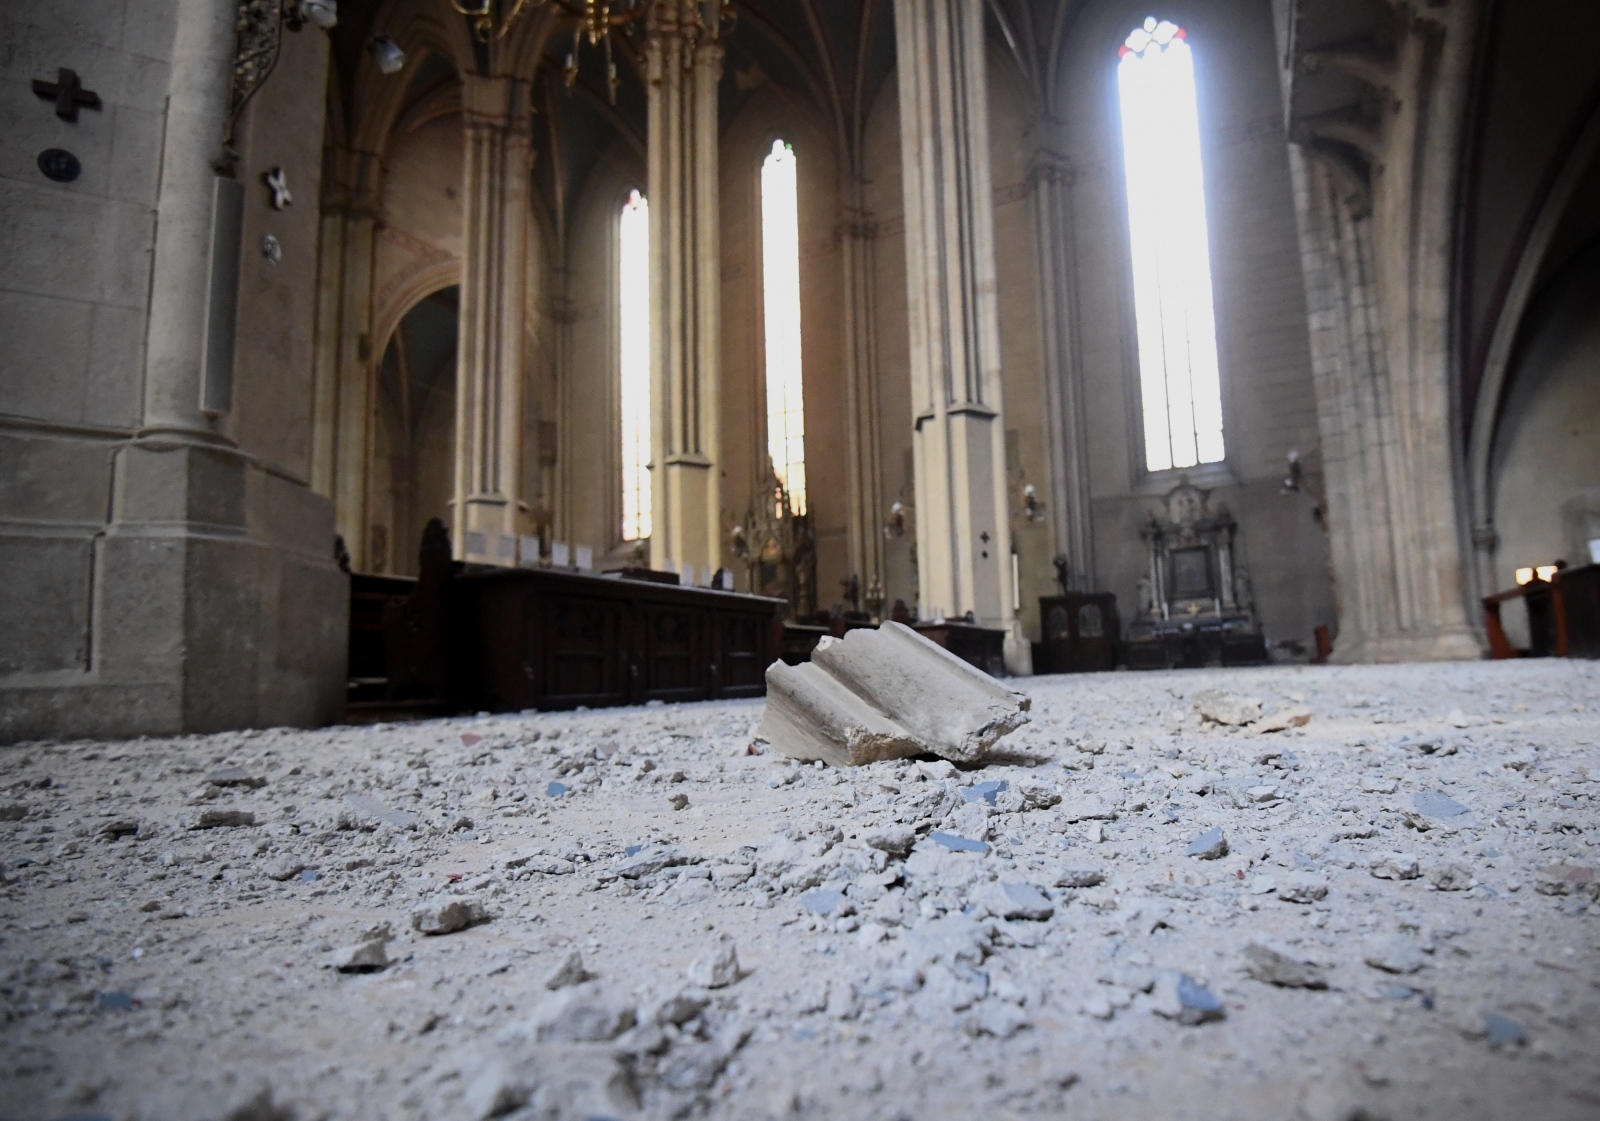 U potresu koji je jutros zatresao Zagreb oštećen je južni toranj zagrebačke katedrale, a u crkvi Uznesenja Blažene Djevice Marije u Remetama, urušio se dio stropa svetišta.